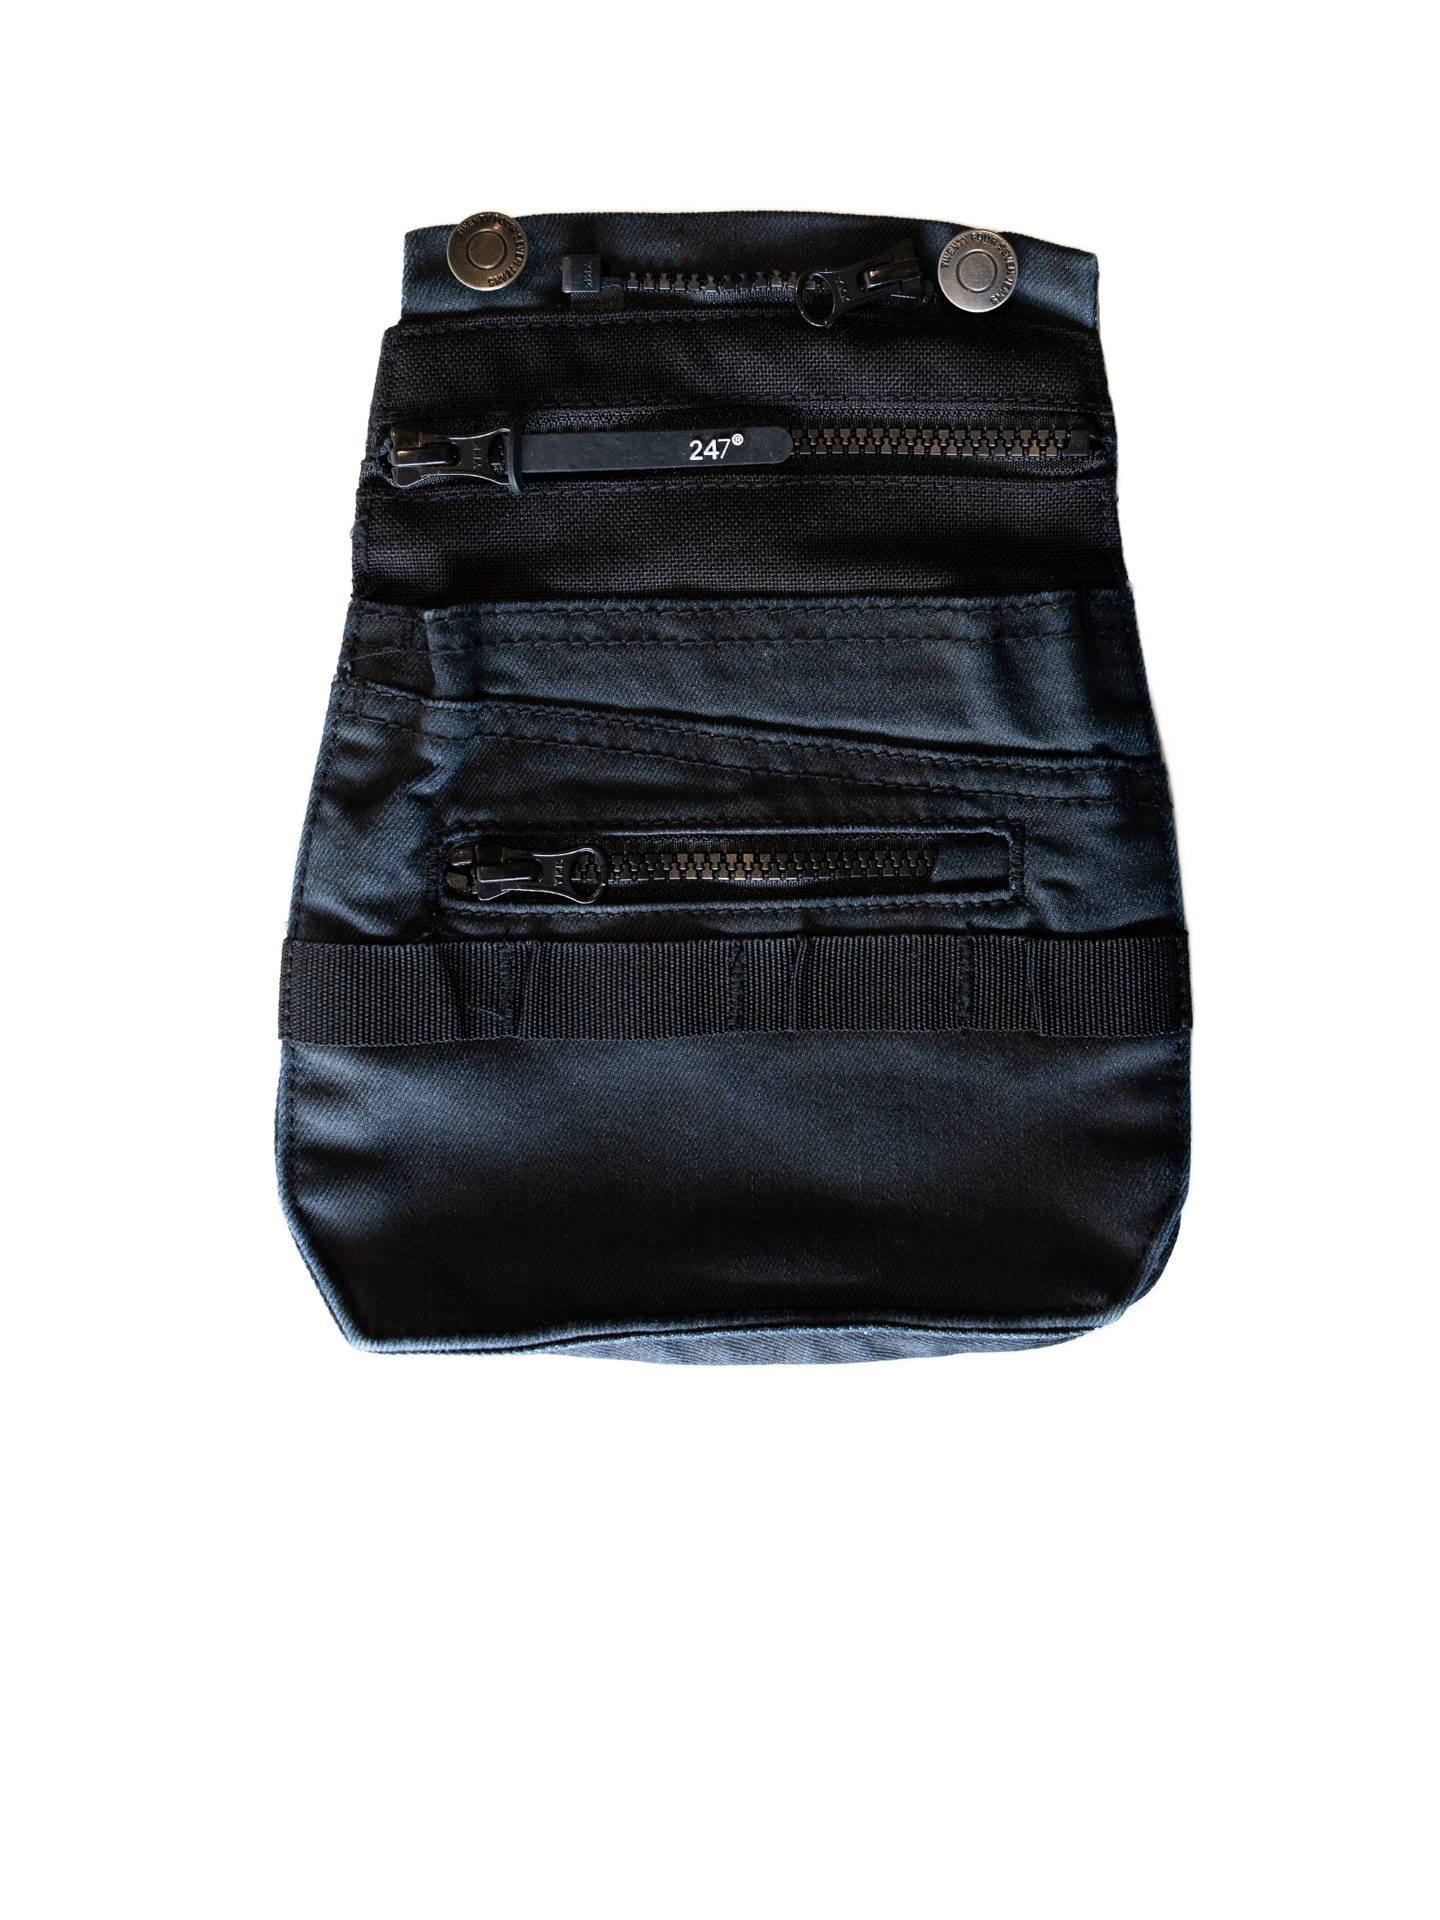 247Jeans Workwear W41 pocket